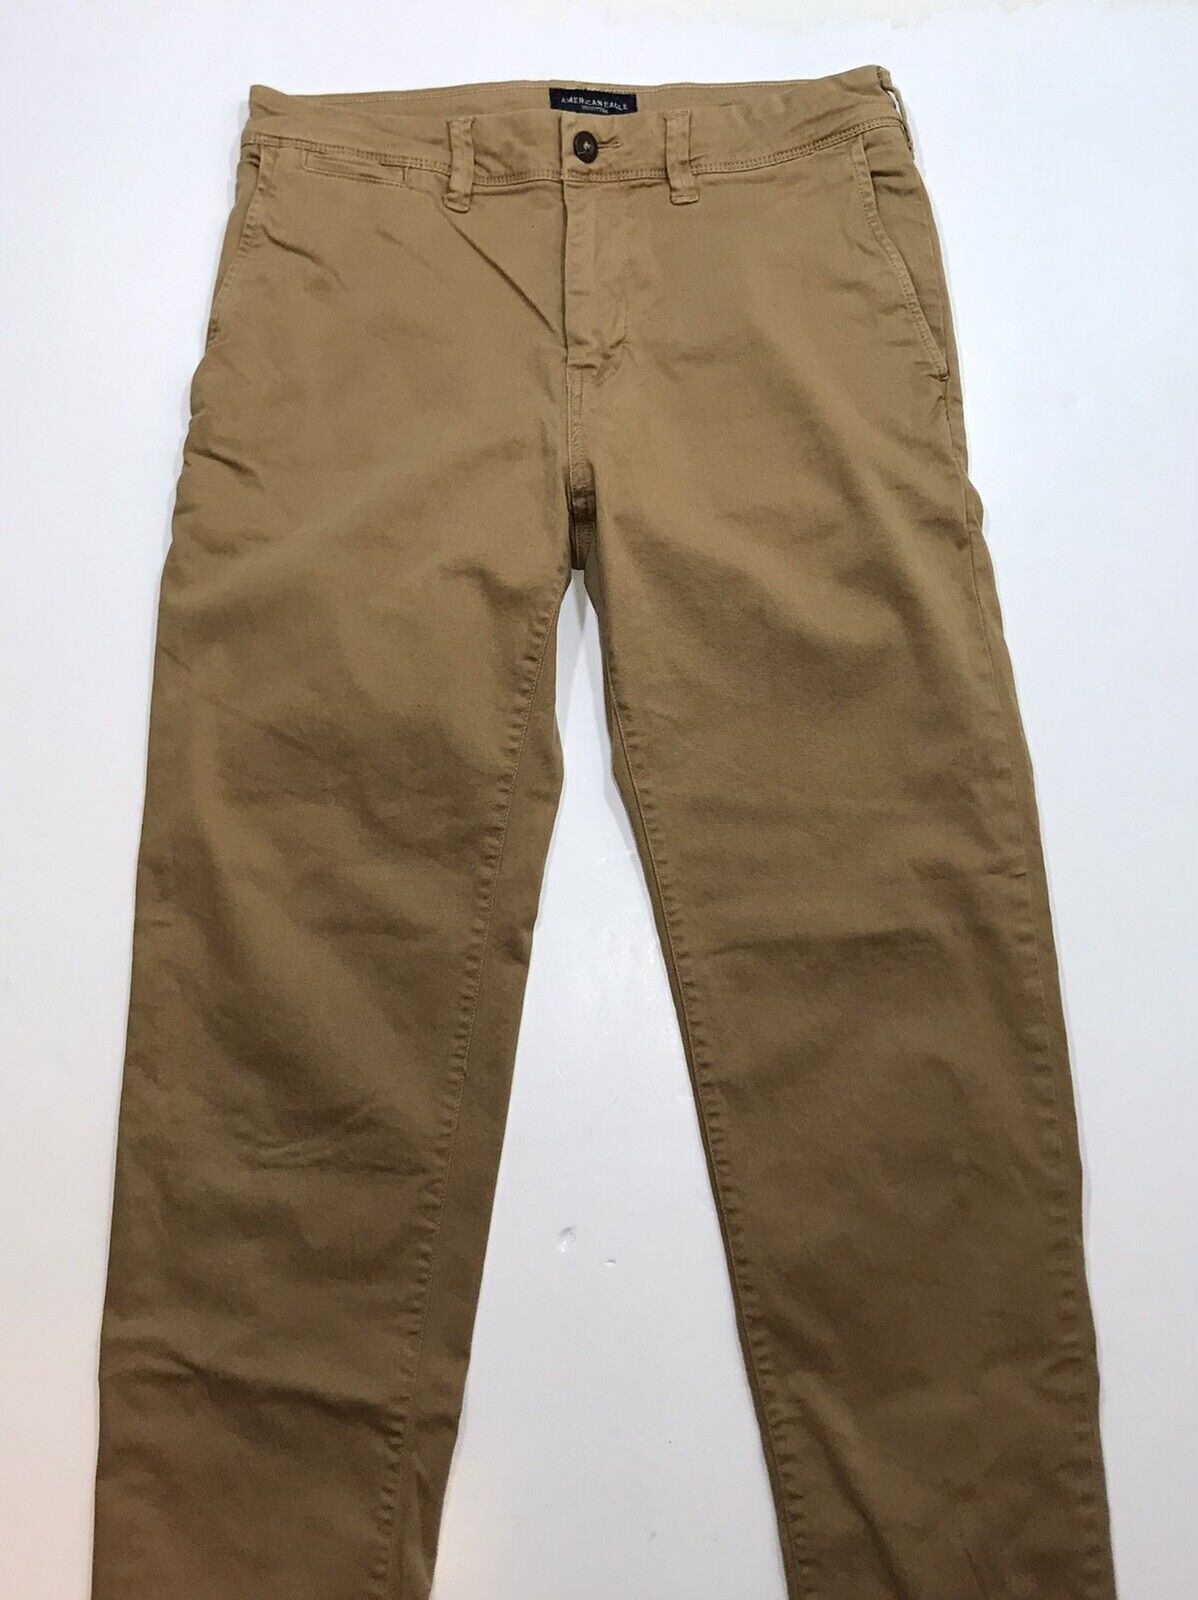 Mens American Eagle Slim Straight Khaki Chino Pants, 30x32 | eBay